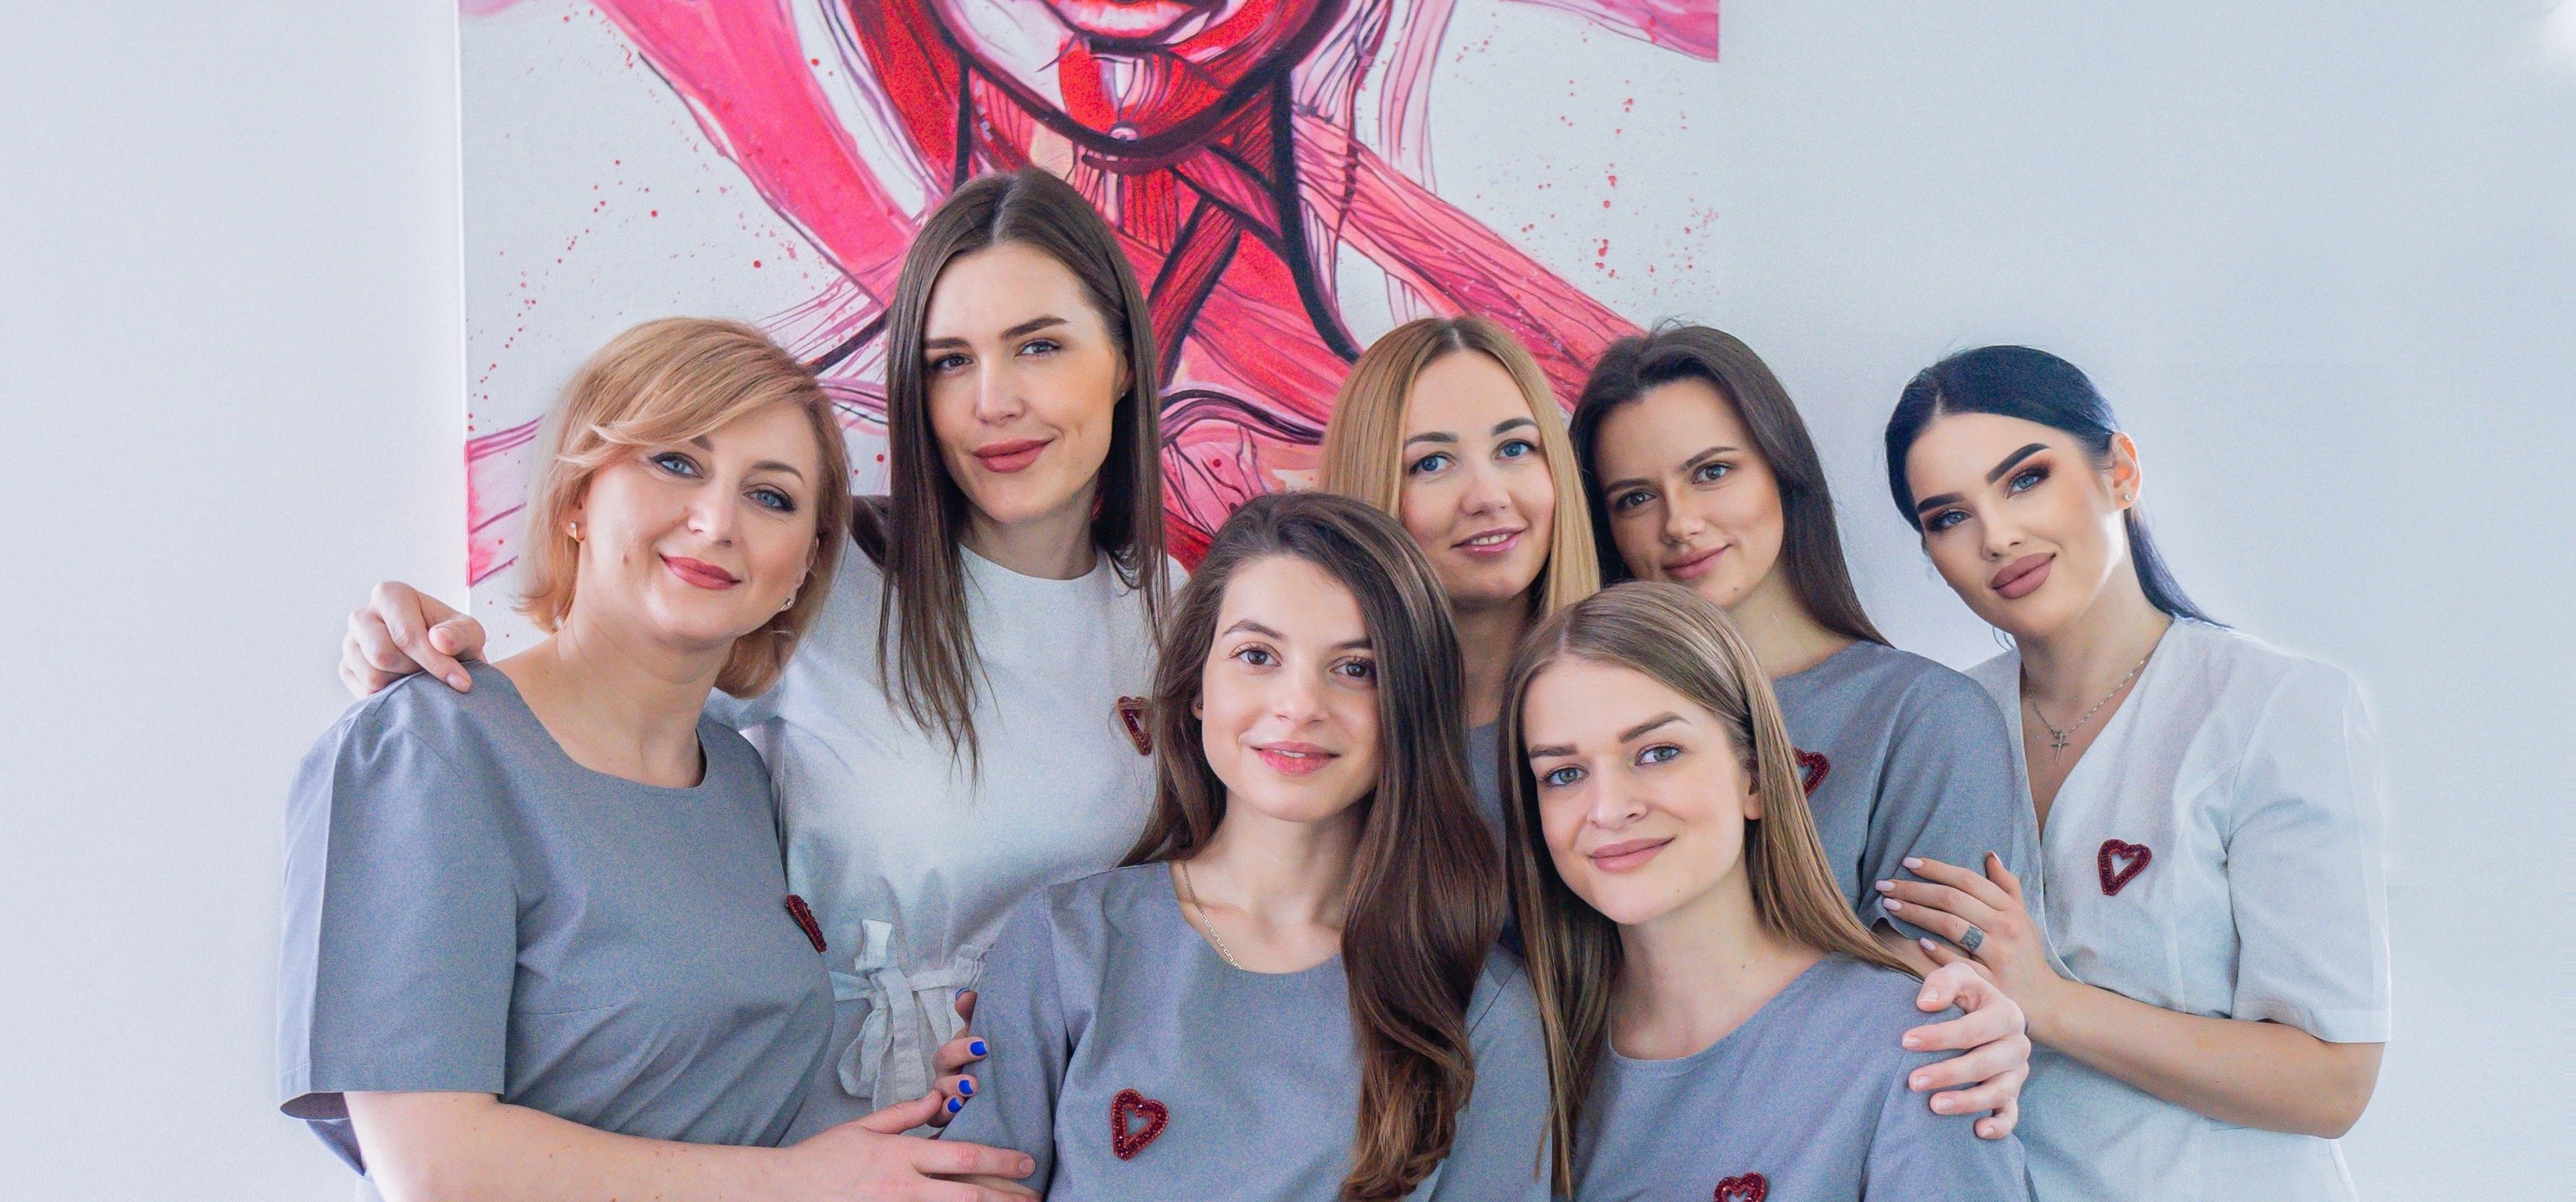 Група спеціалістів косметологічного центру, стоячи в їхньому робочому просторі. Вони усміхаються та виглядають дружелюбно, одягнені в професійний одяг з логотипами клініки.